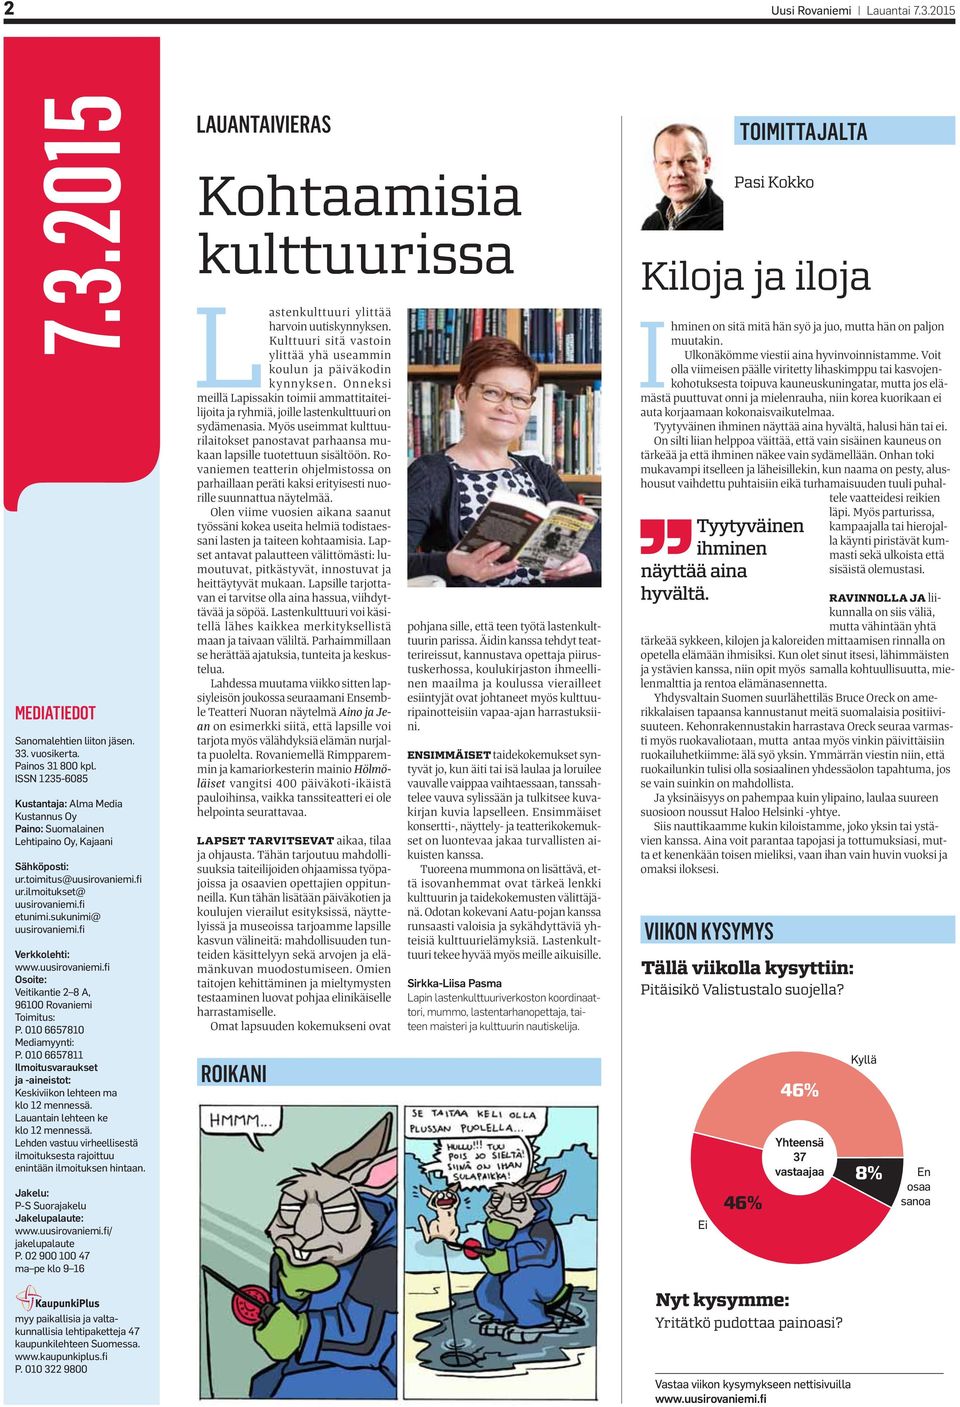 fi Verkkolehti: www.uusirovaniemi.fi Osoite: Veitikantie 2 8 A, 96100 Rovaniemi Toimitus: P. 010 6657810 Mediamyynti: P.